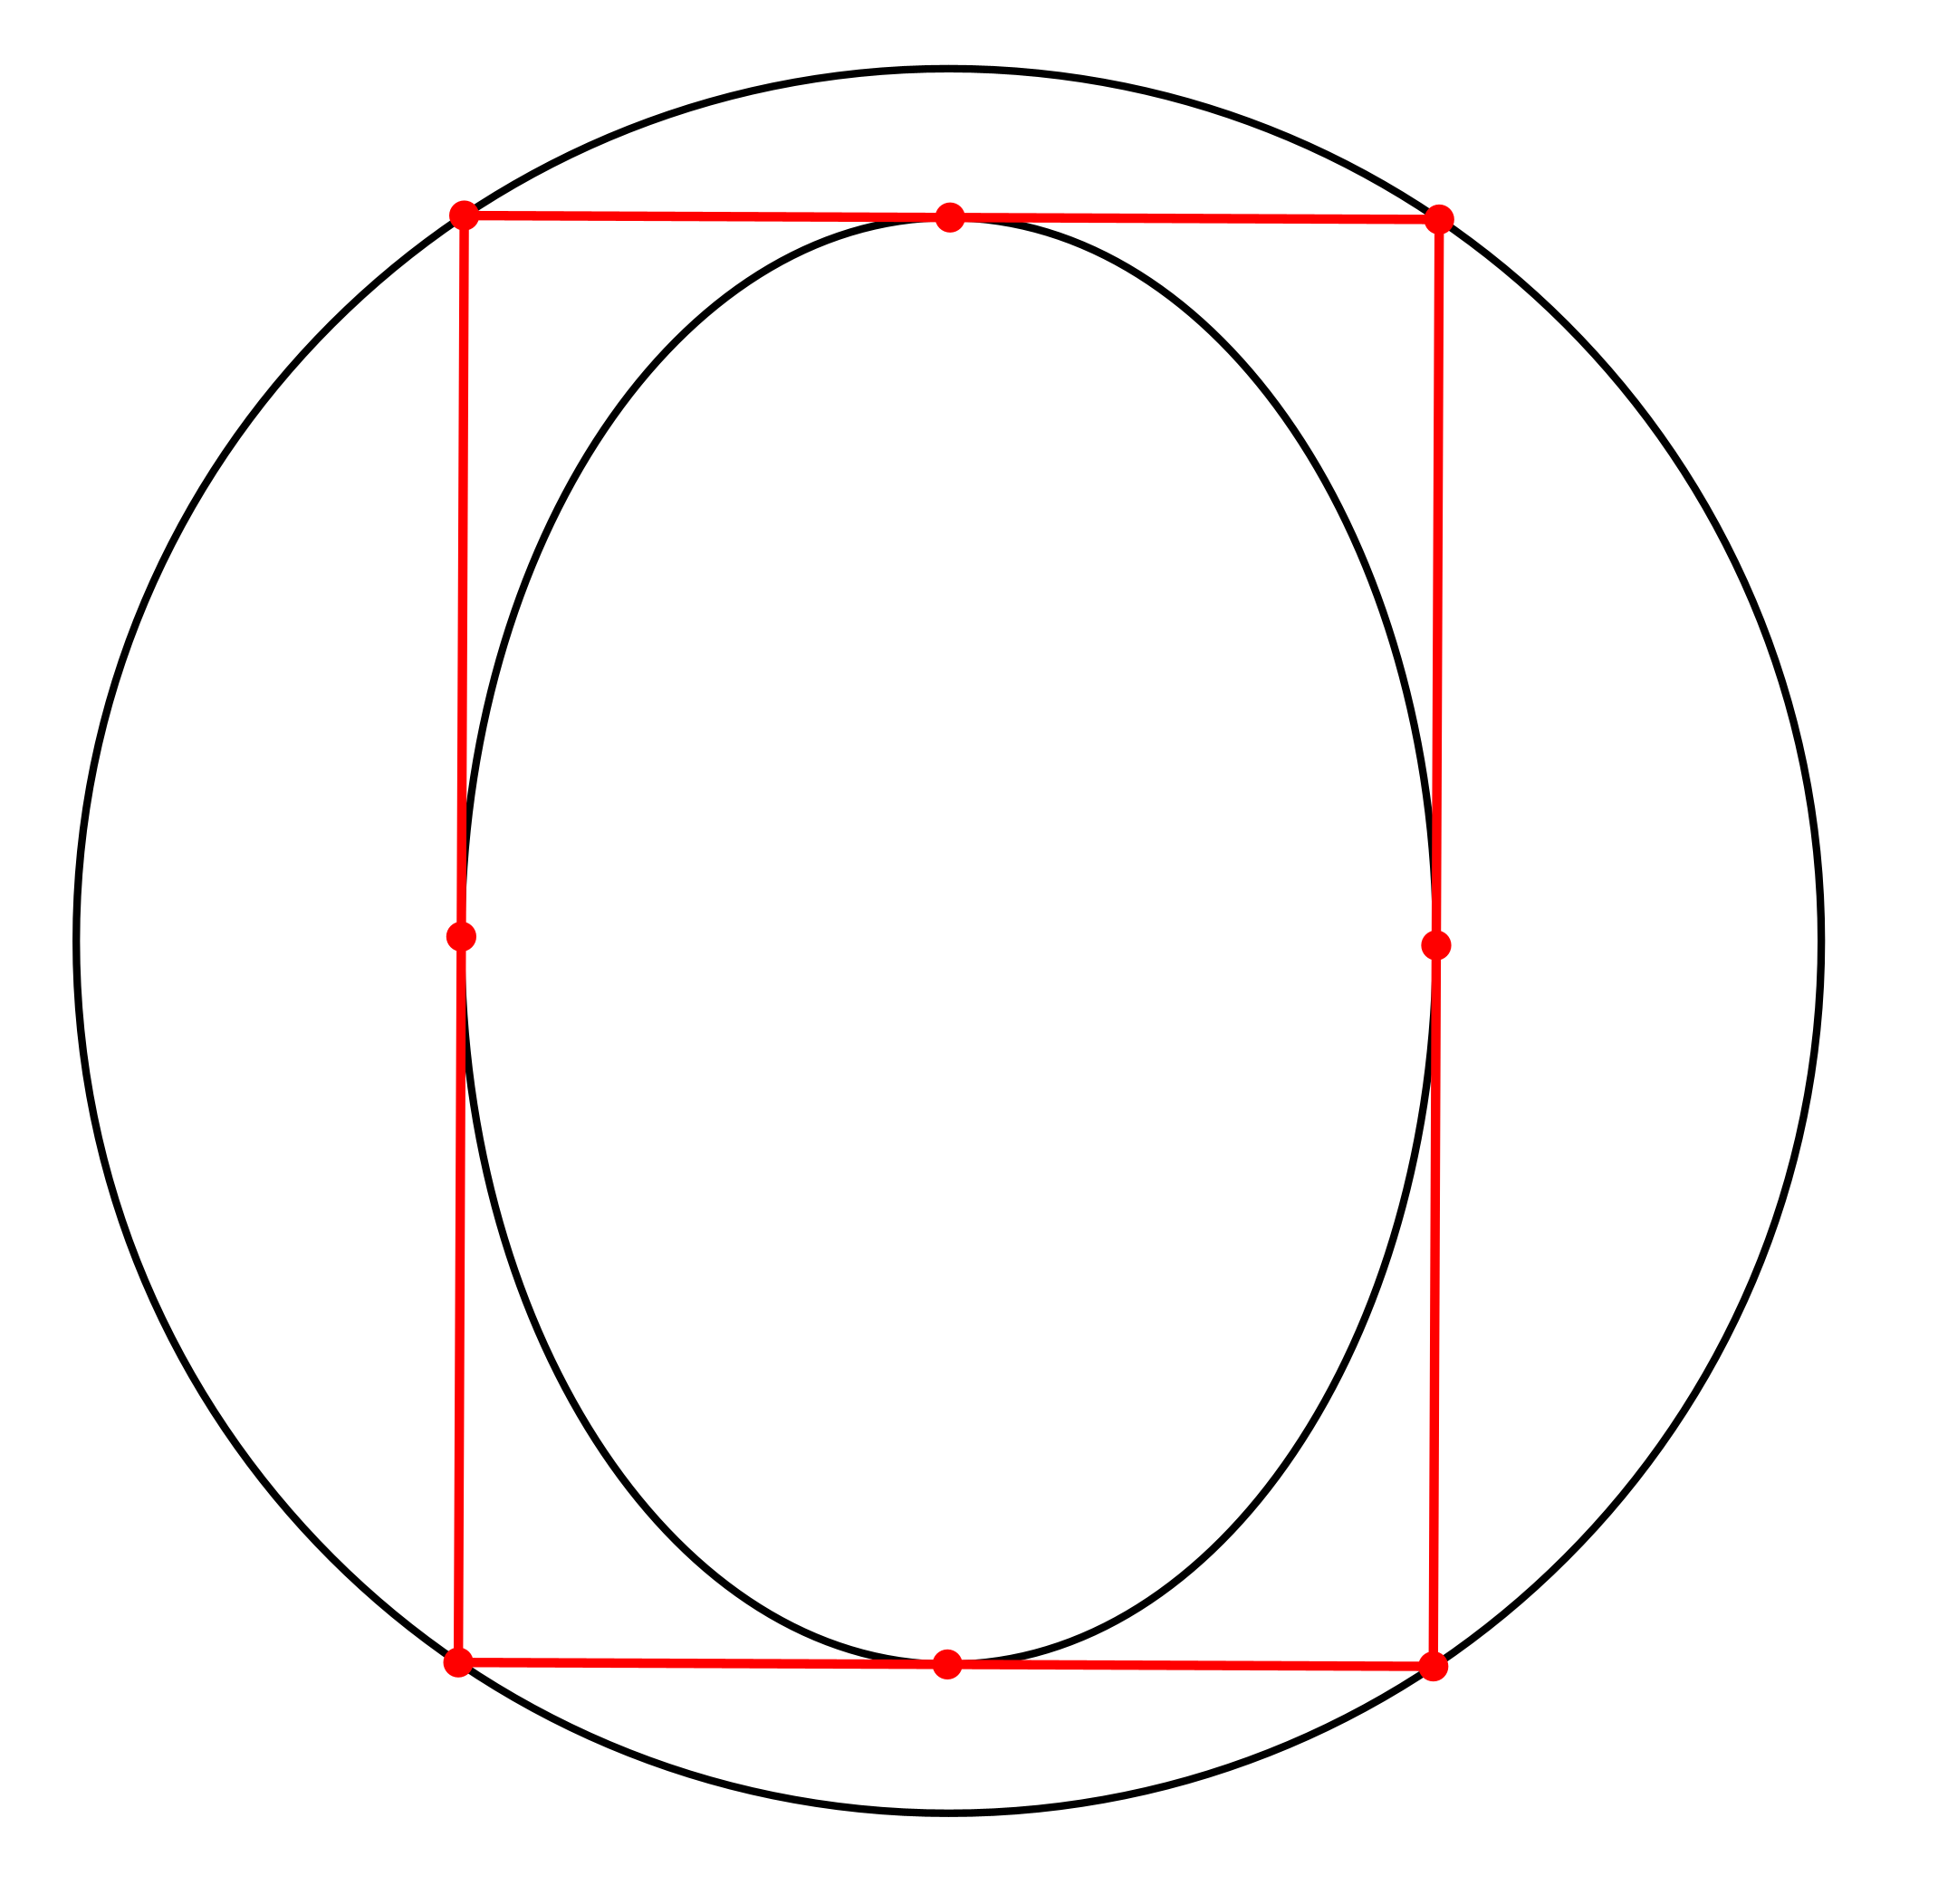 Ein Bild, das Screenshot, Rechteck, Quadrat, Reihe enthält.

Automatisch generierte Beschreibung